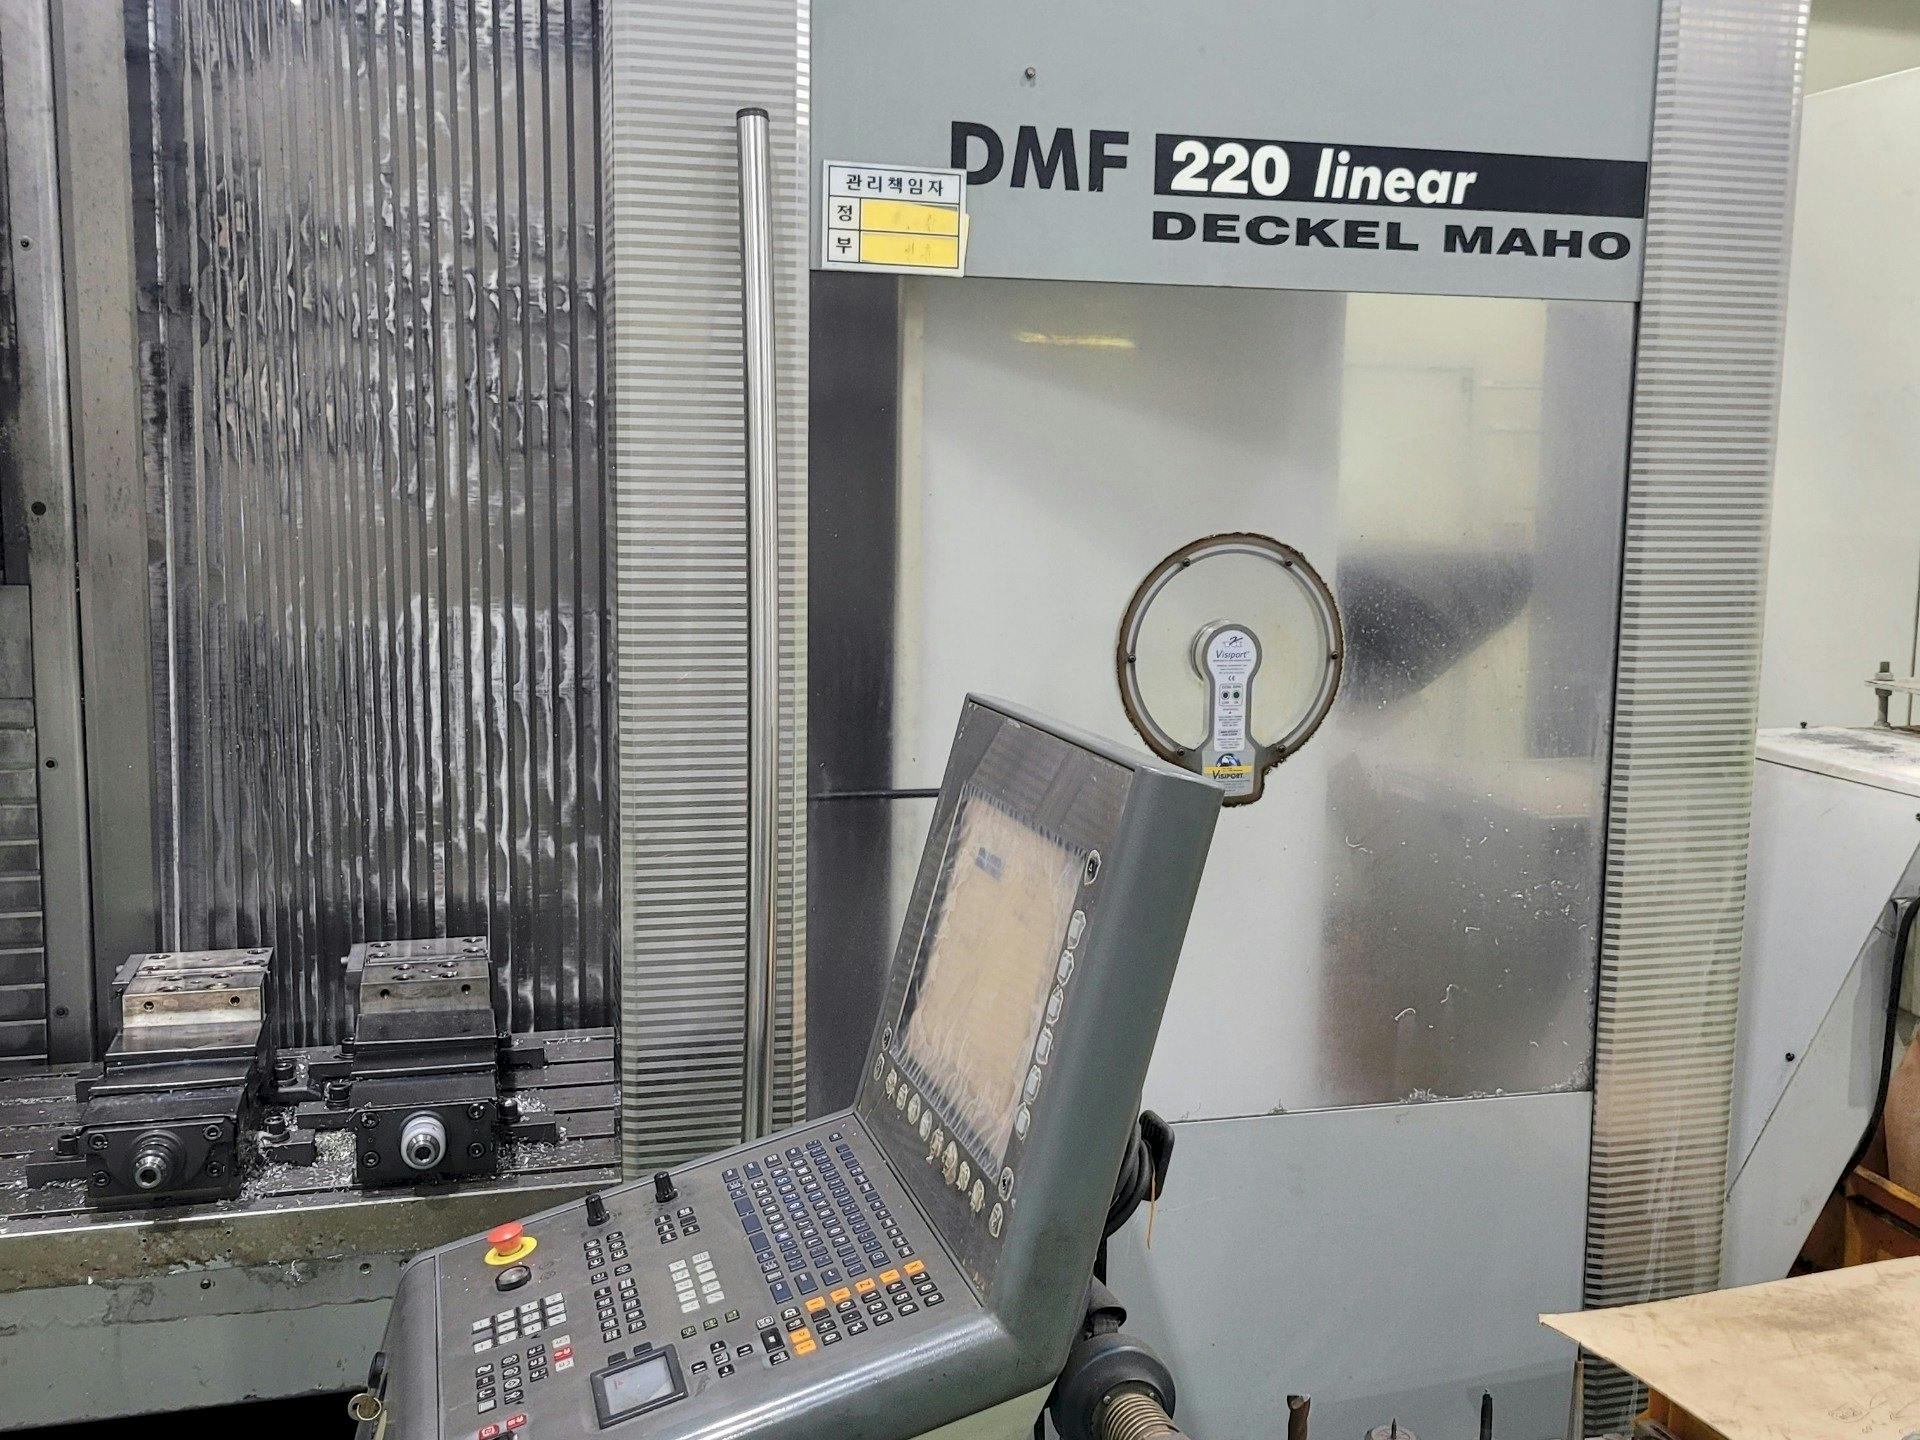 Widok z przodu maszyny DECKEL MAHO DMF 220 Linear